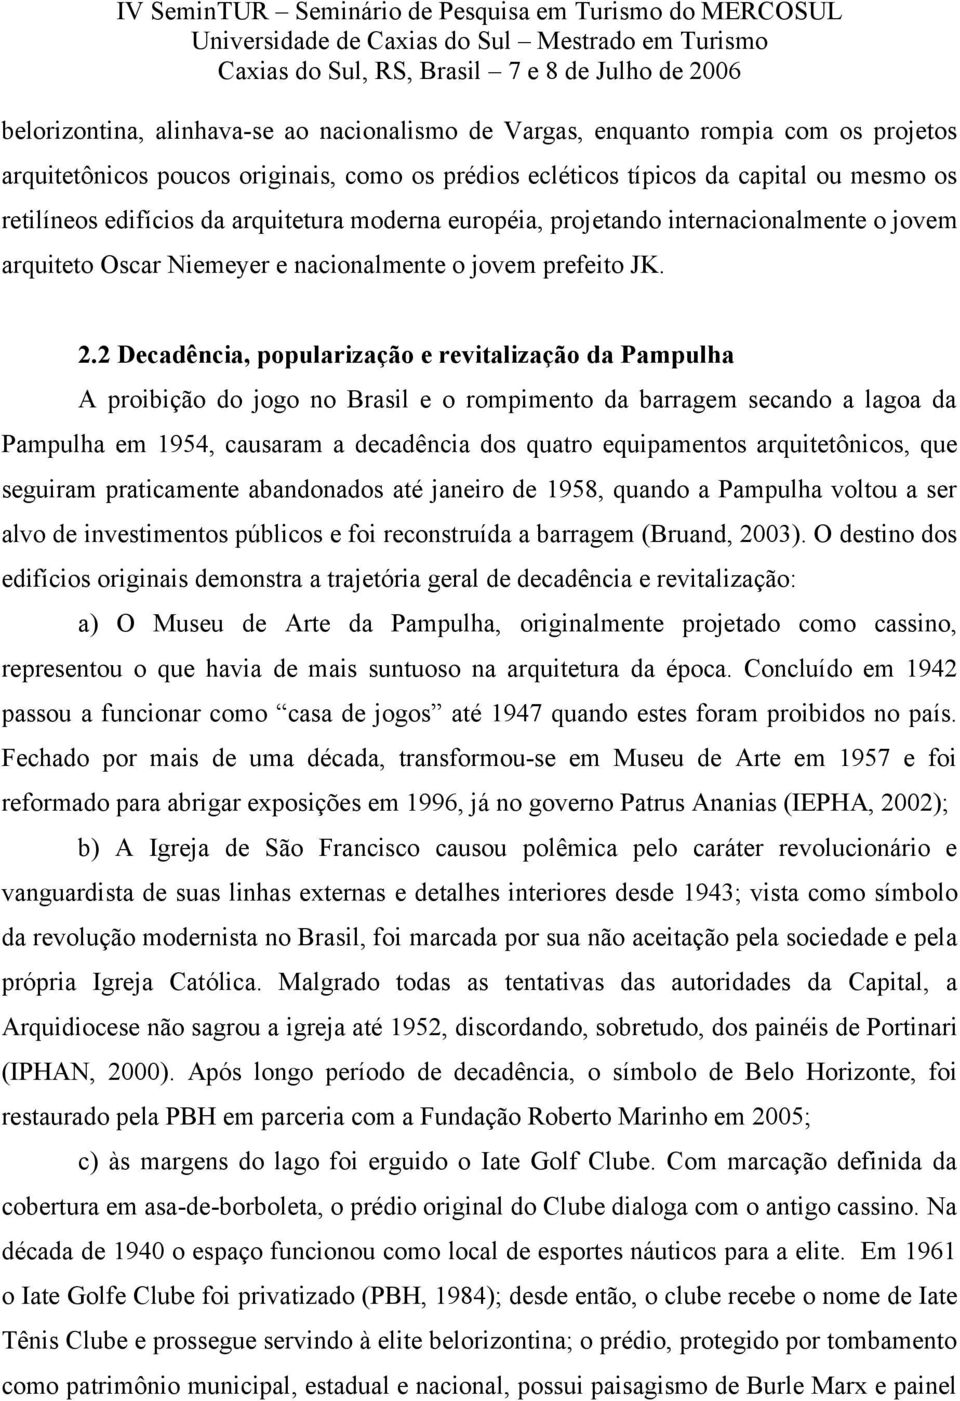 2 Decadência, popularização e revitalização da Pampulha A proibição do jogo no Brasil e o rompimento da barragem secando a lagoa da Pampulha em 1954, causaram a decadência dos quatro equipamentos